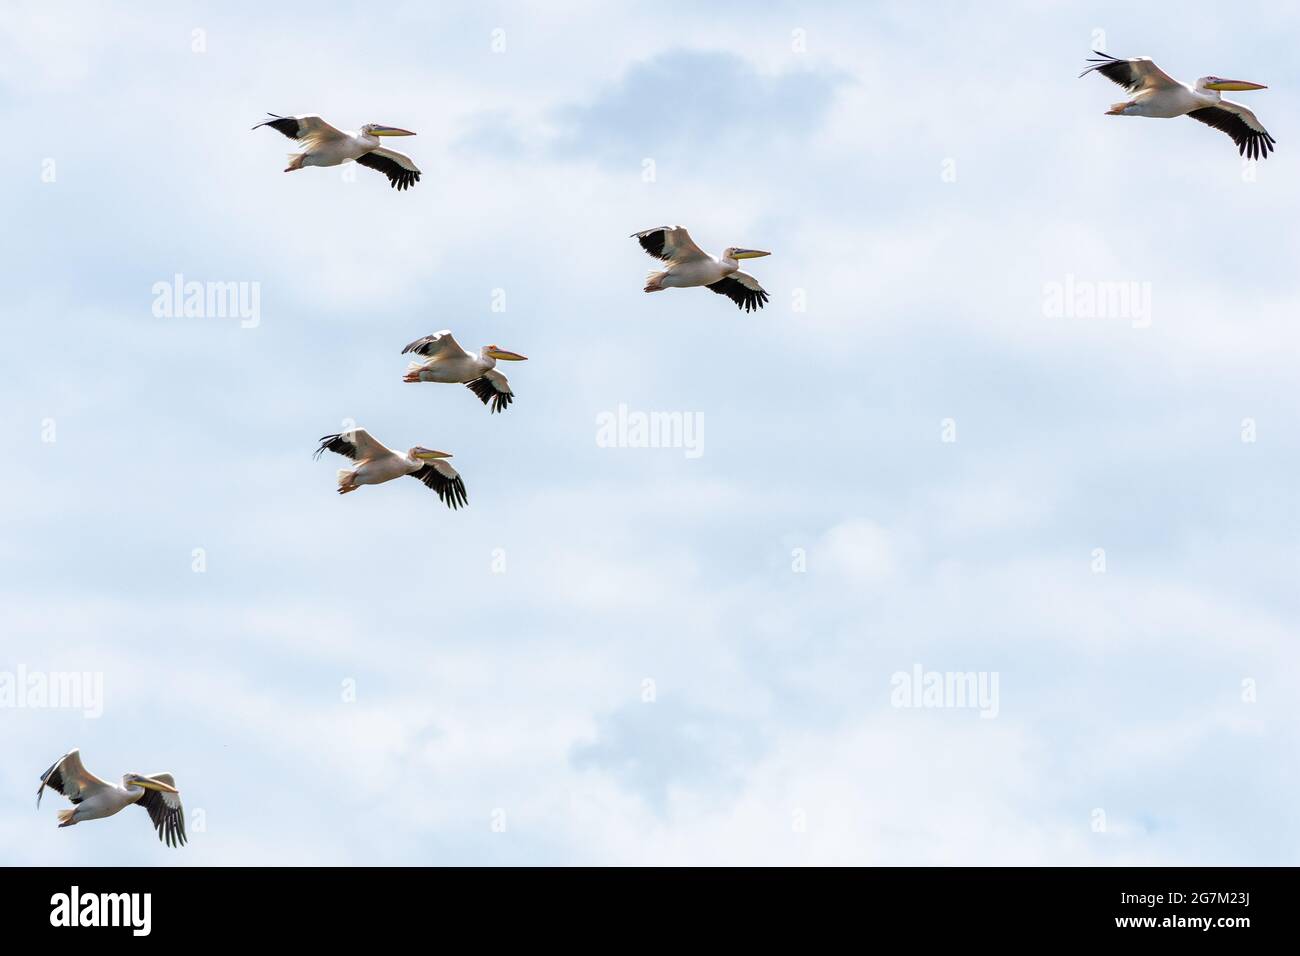 flock of pelicans in flight Stock Photo